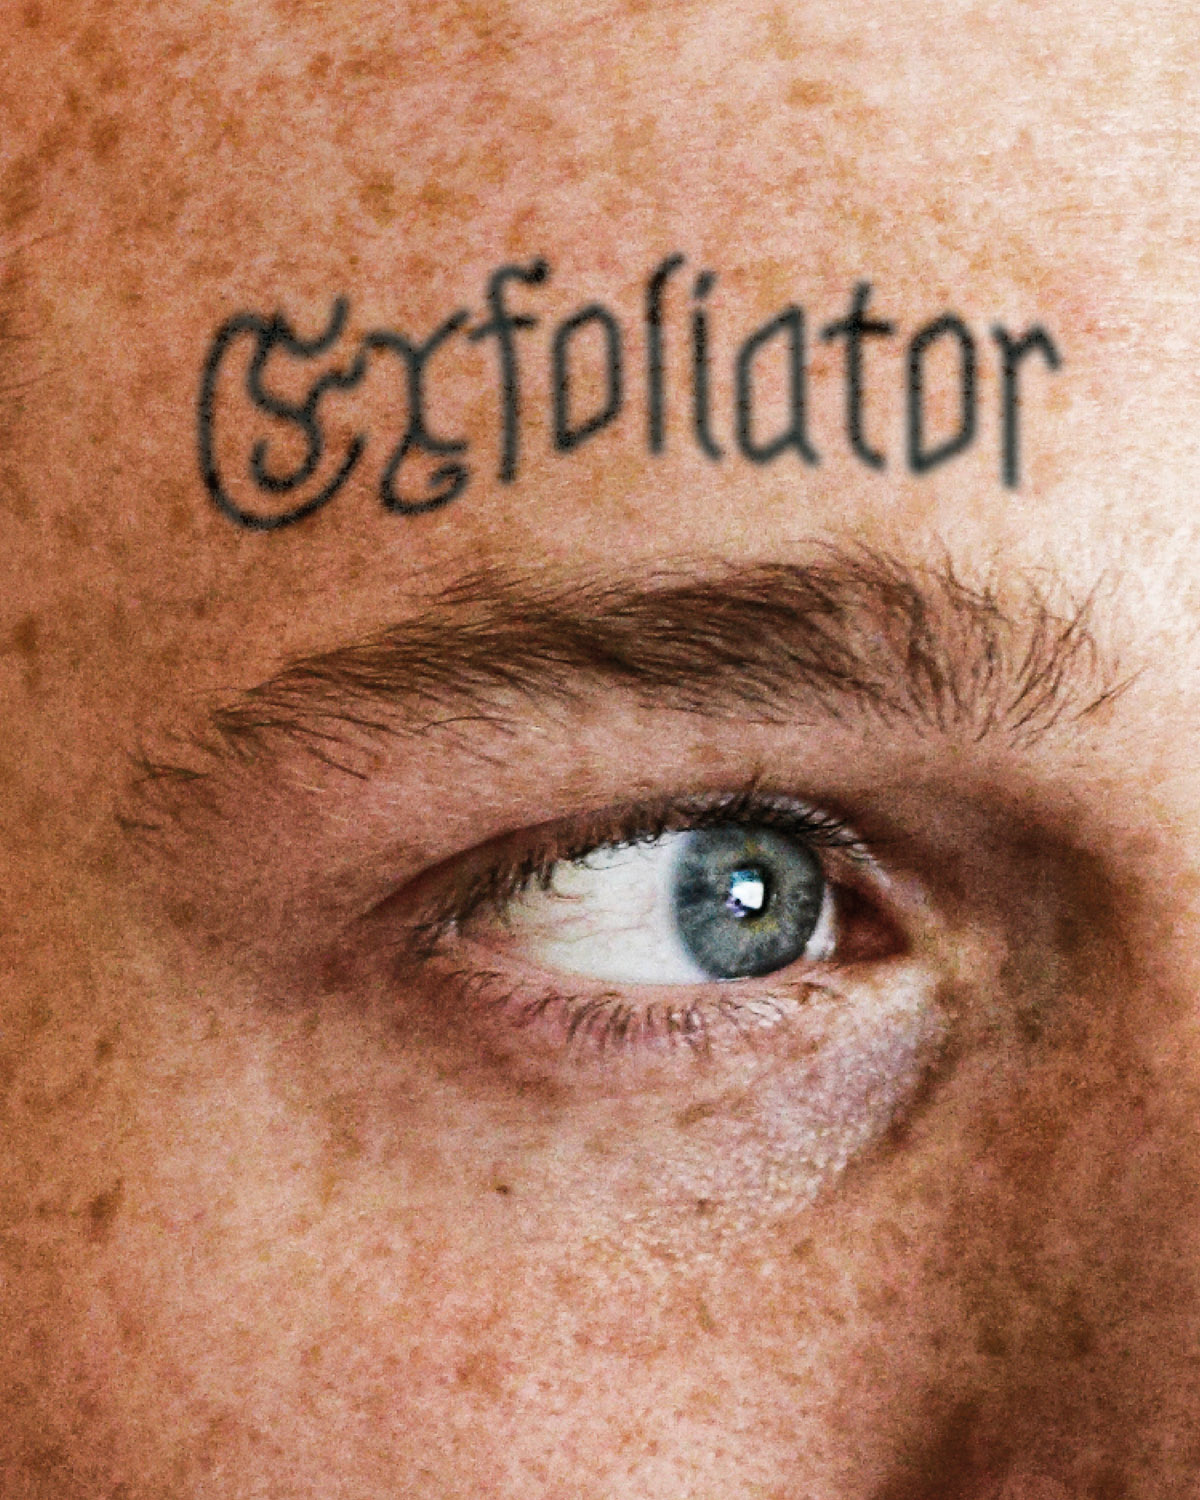 ED_WEB_FEAT_Face_Tattoos_Exfoliator_1200x1500